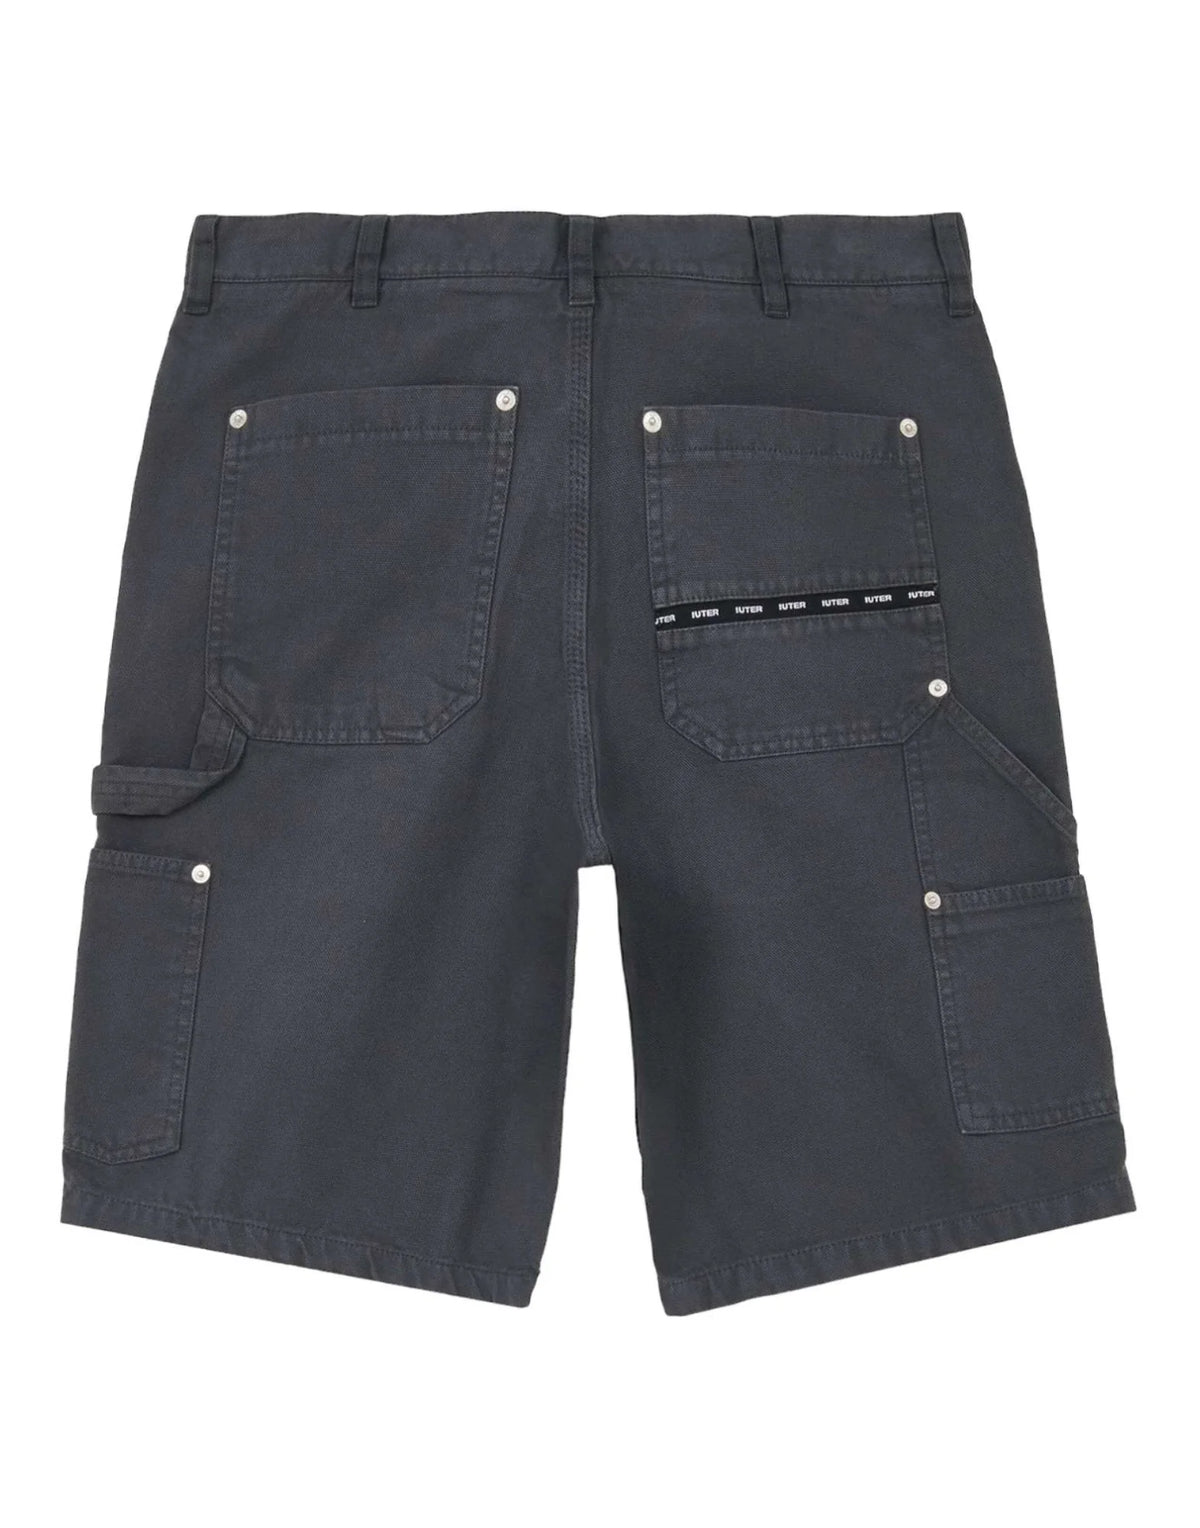 Iuter Carpenter black men's shorts